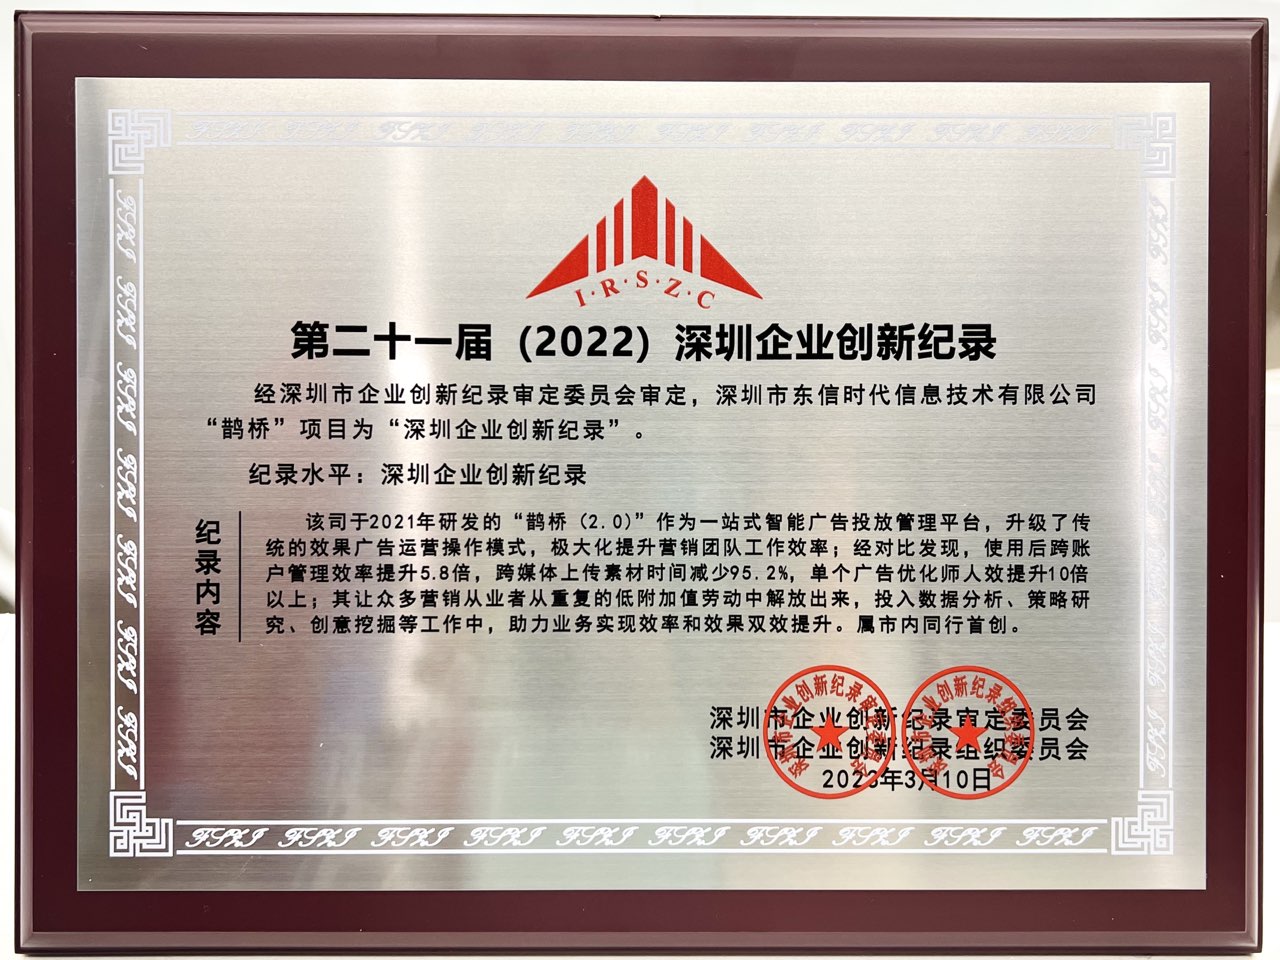 20230310鹊桥入选深圳企业创新纪录.jpg